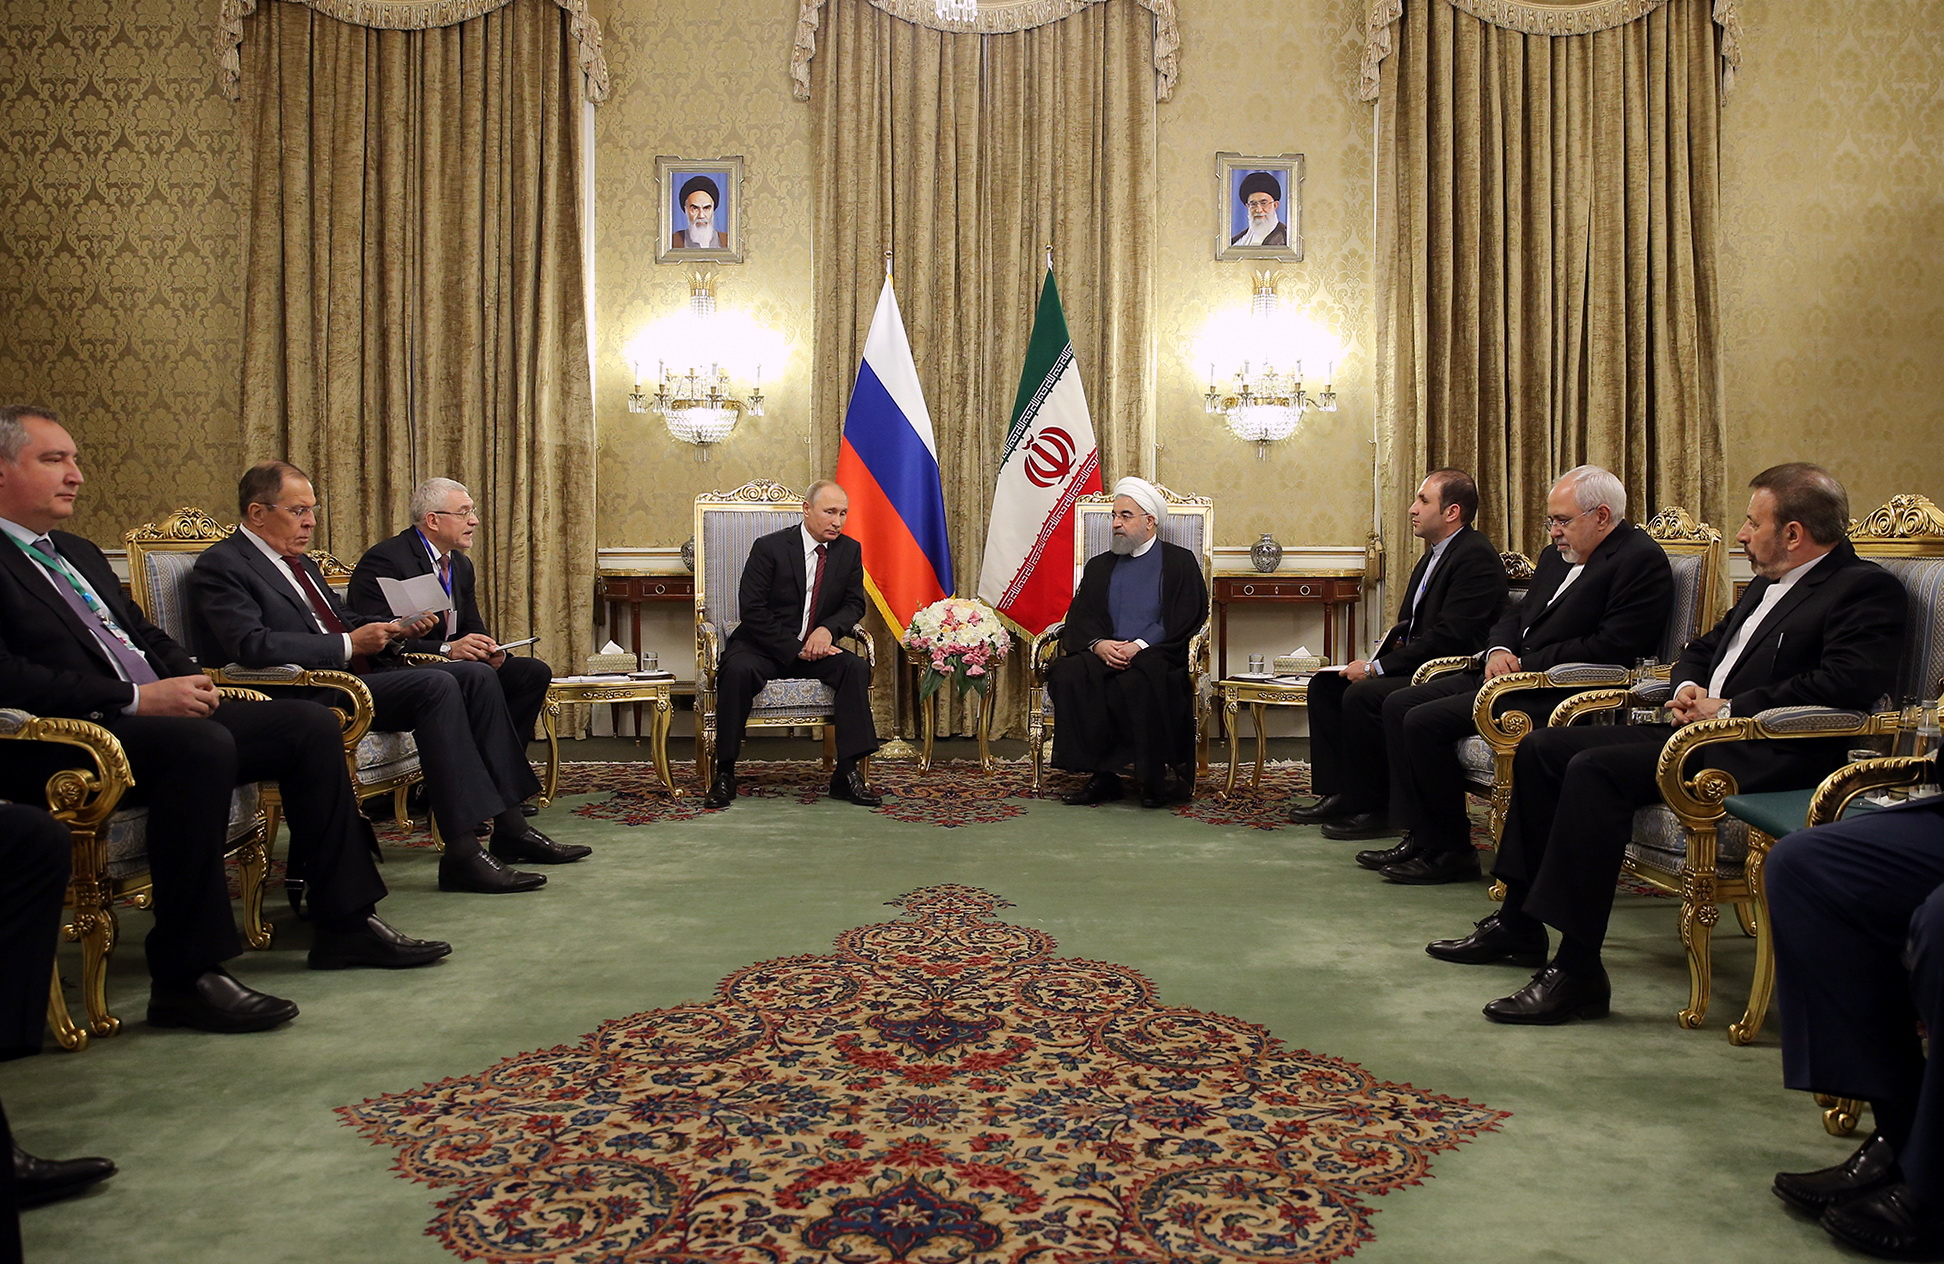 دکتر روحانی در دیدار رییس جمهور روسیه: روسیه دوست، همسایه و شریک راهبردی ایران است